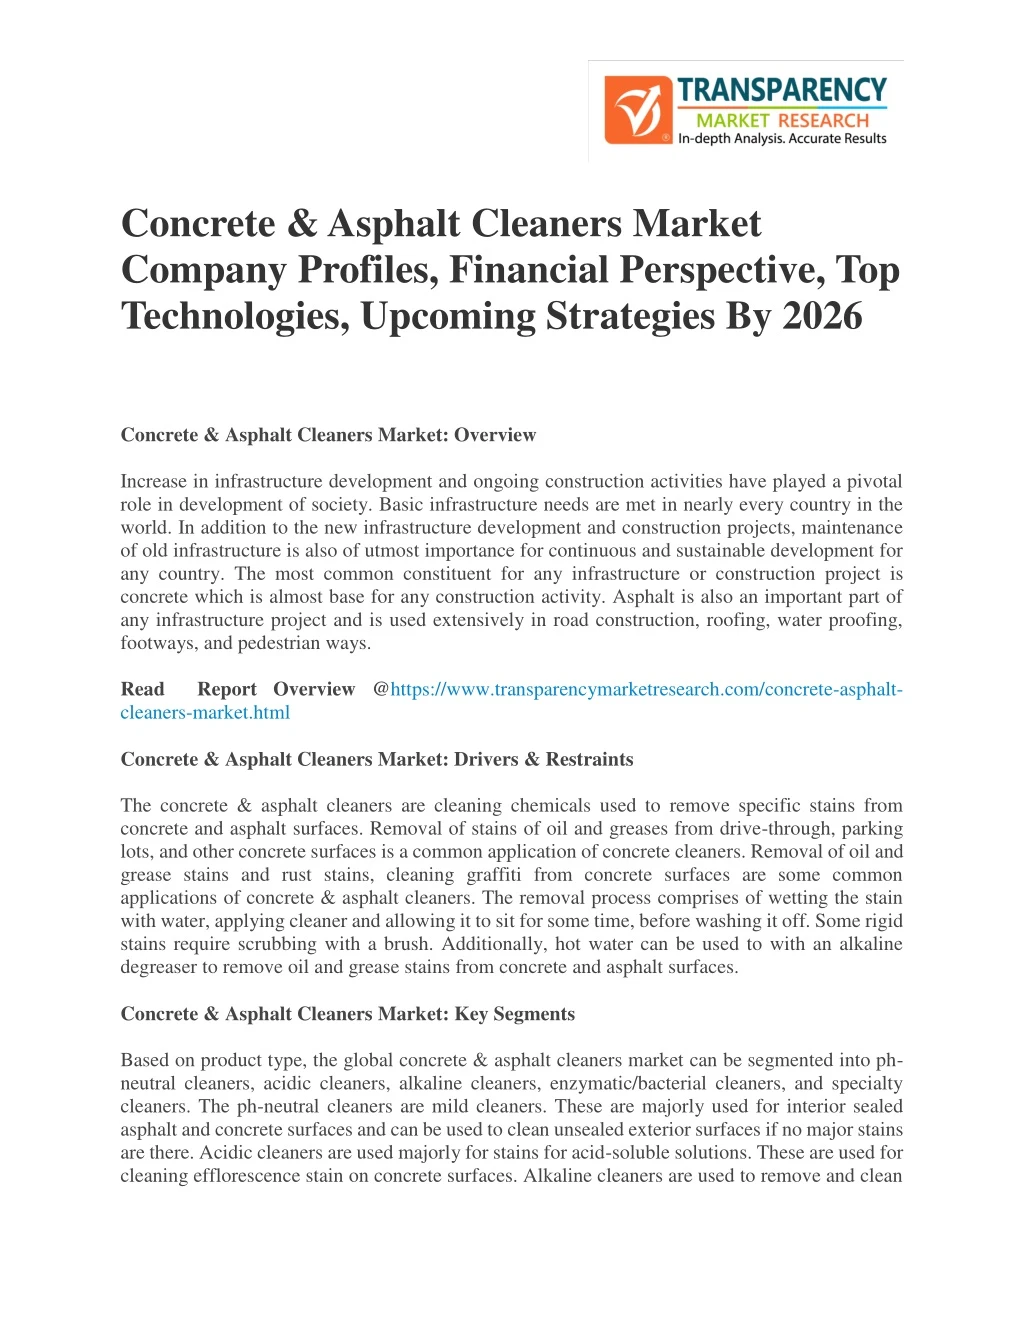 concrete asphalt cleaners market company profiles